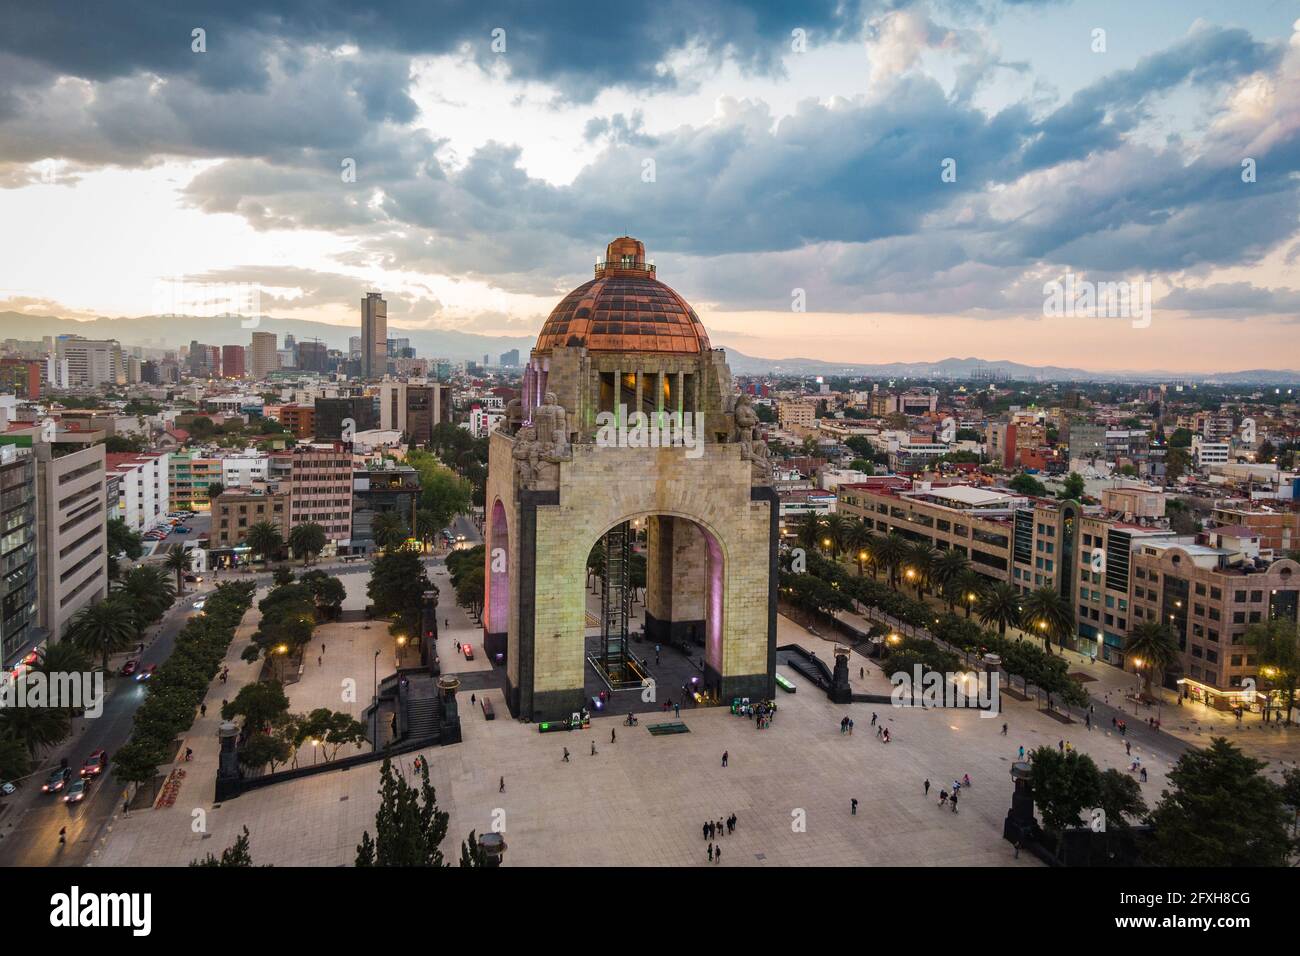 Luftaufnahme der Stadtlandschaft einschließlich architektonischem Wahrzeichen Monument to the Revolution am Republic Square in Mexico City, Mexiko. Stockfoto